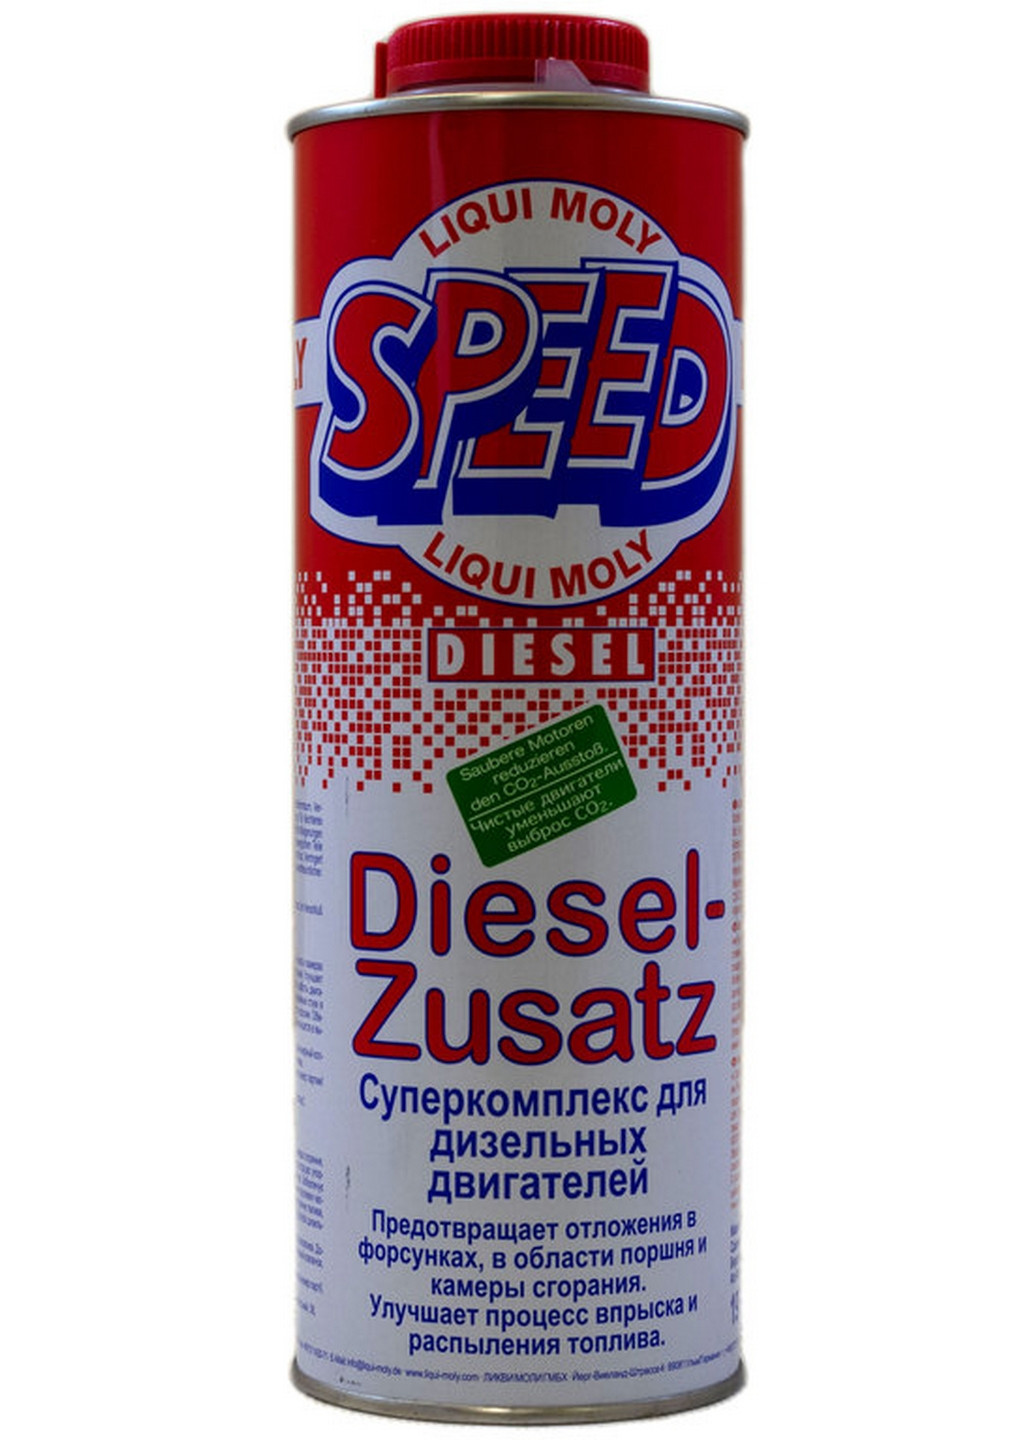 Speed Diesel-Zusatz